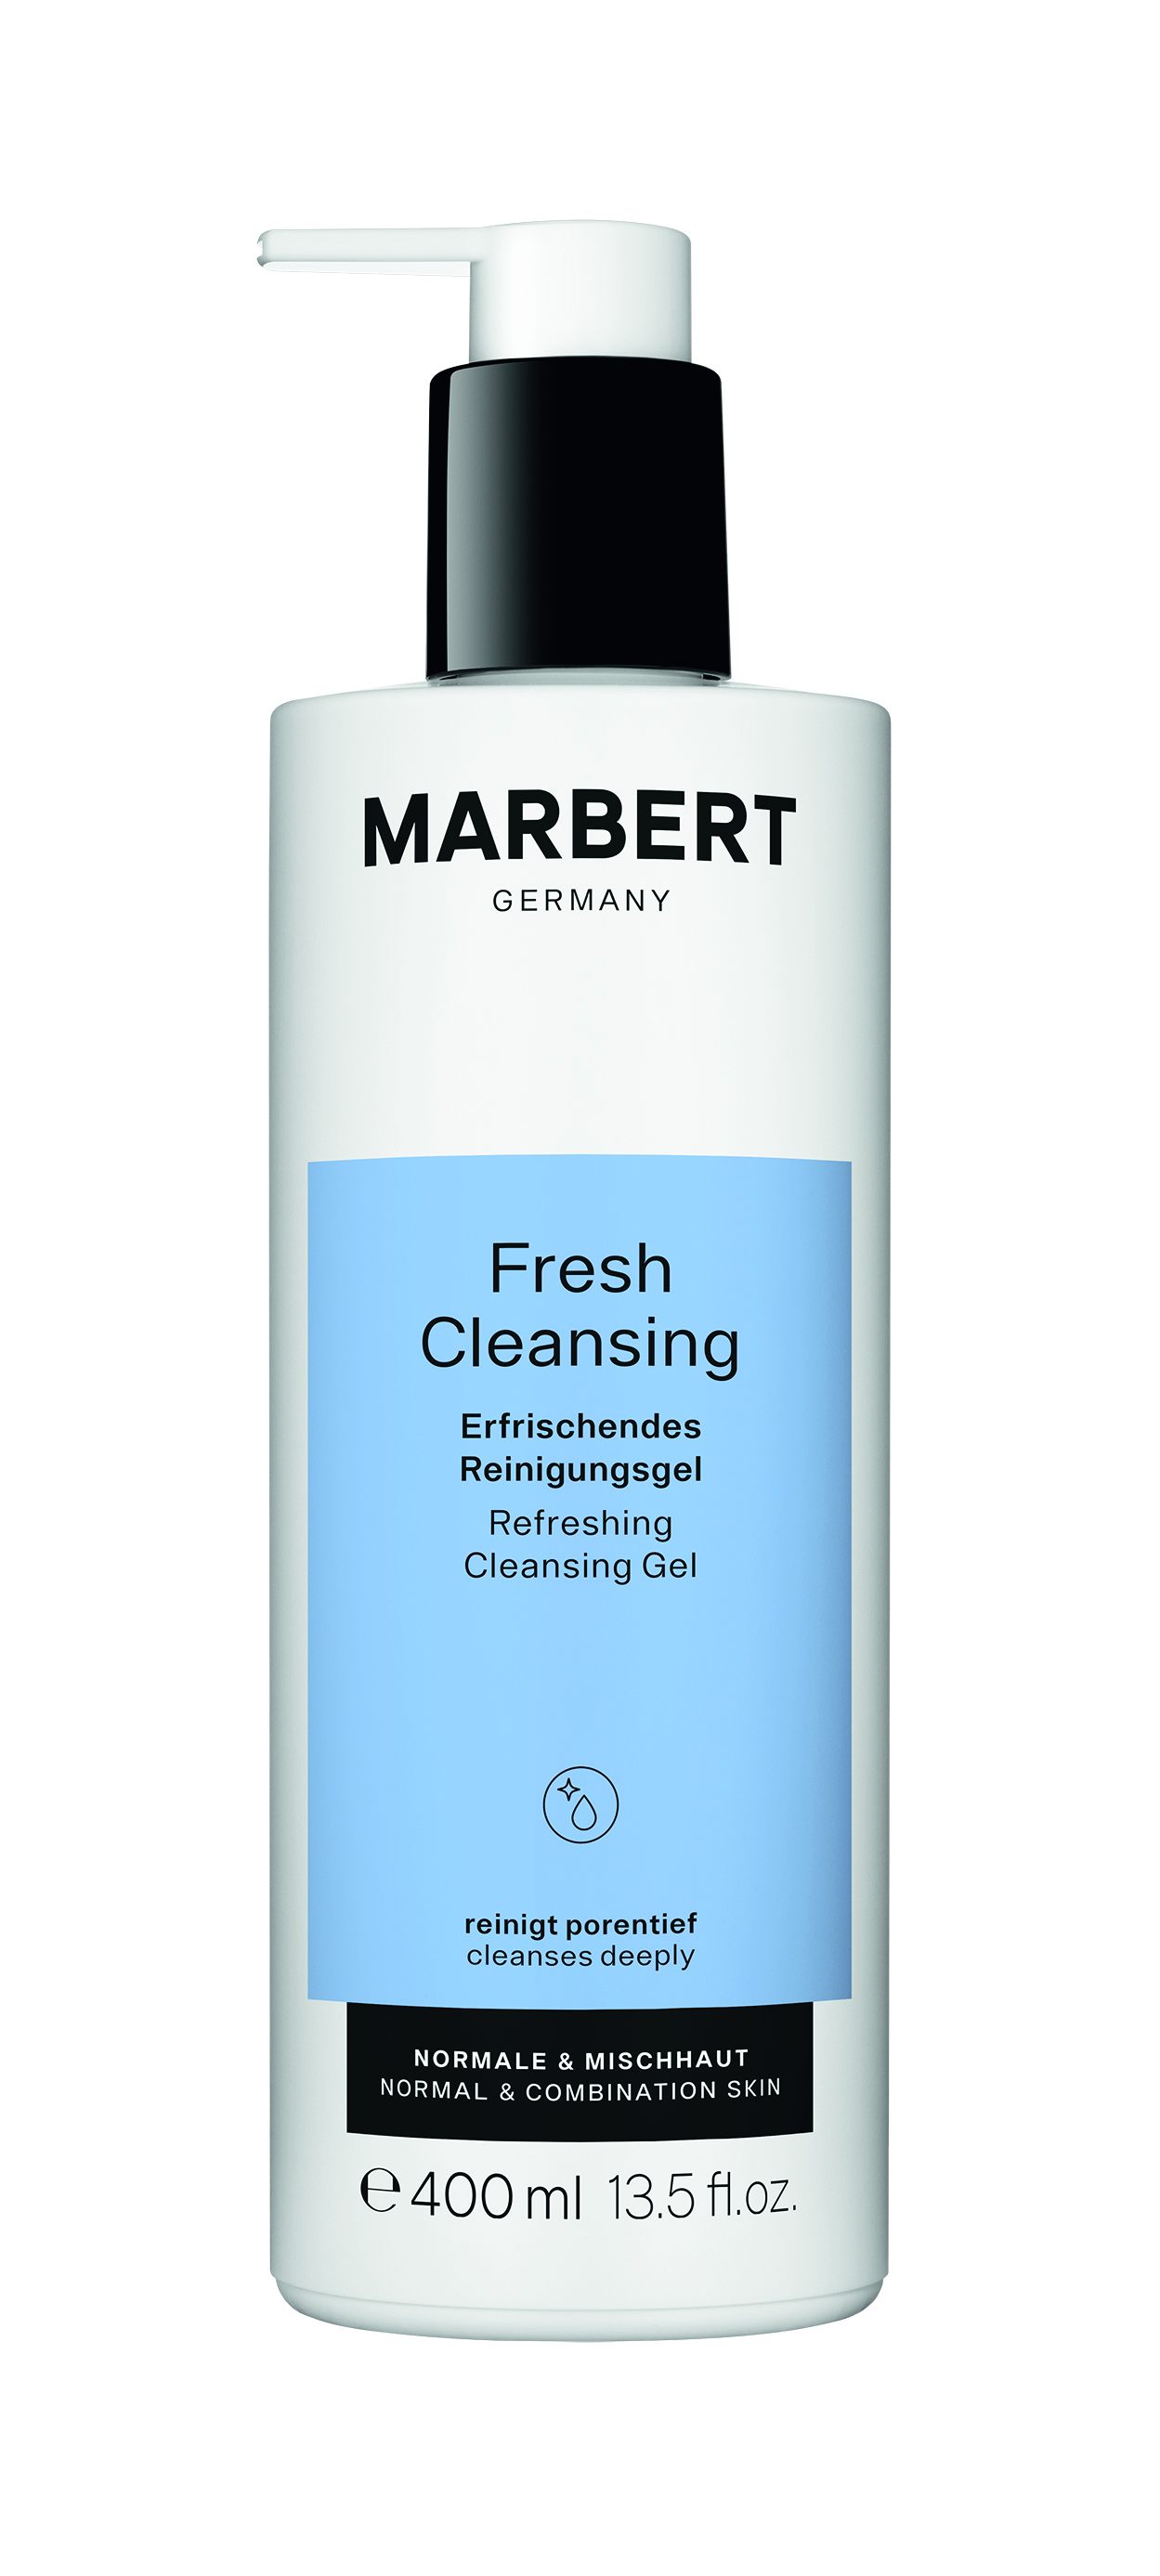 Fresh Cleansing - Erfrischendes Reinigungsgel